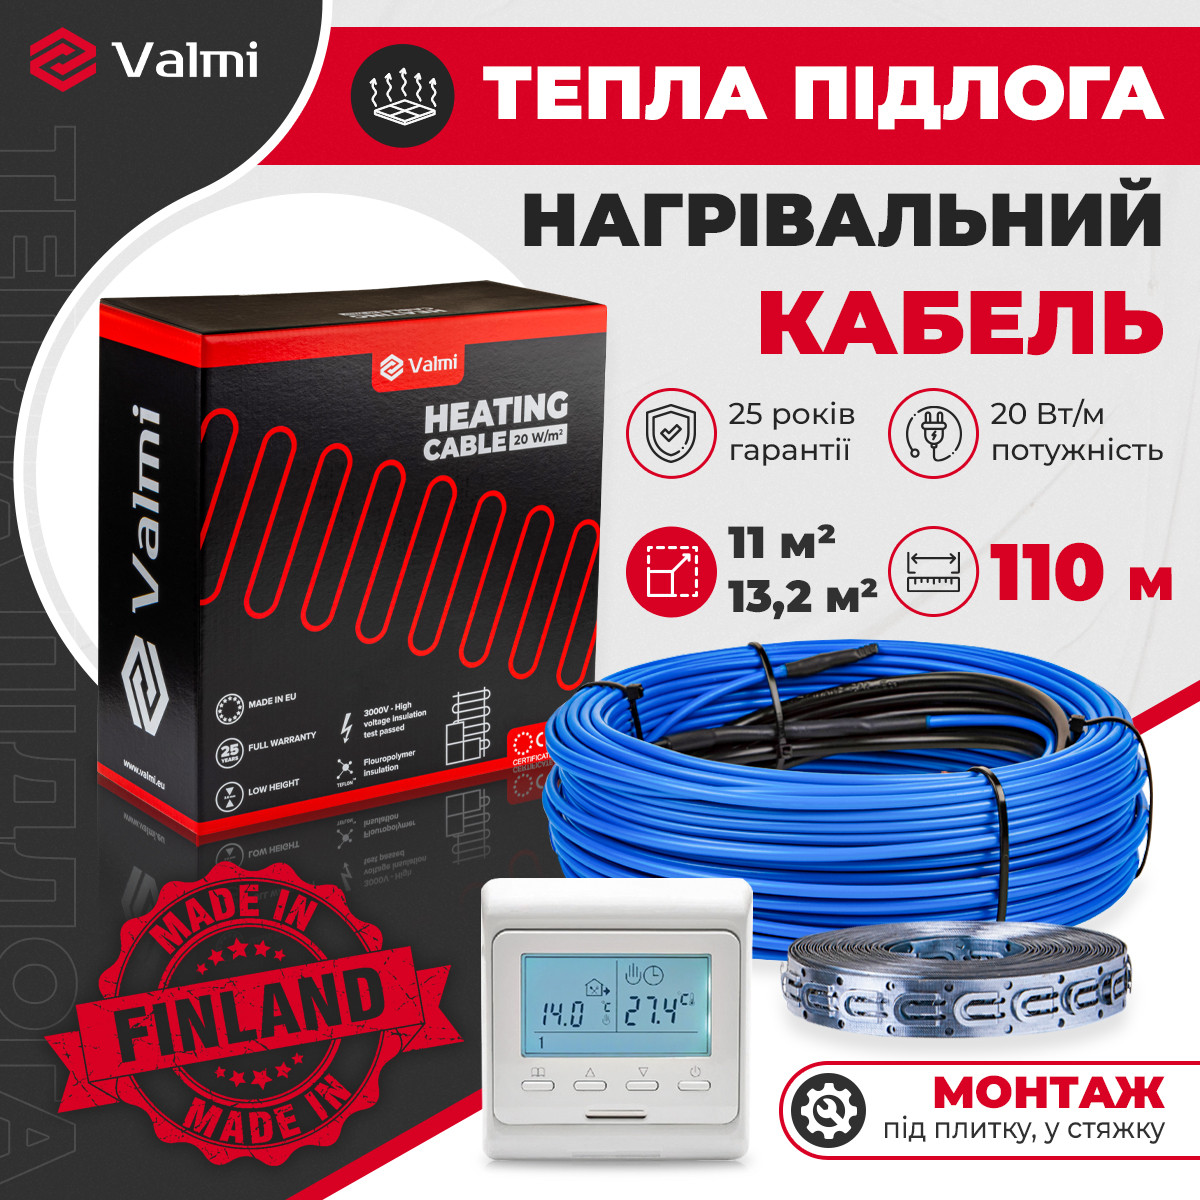 Тепла кабельна підлога Valmi  11м²-13,2м² /2200В(110м) тонкий кабель під плитку 20 Вт/м з терморегулятором E51